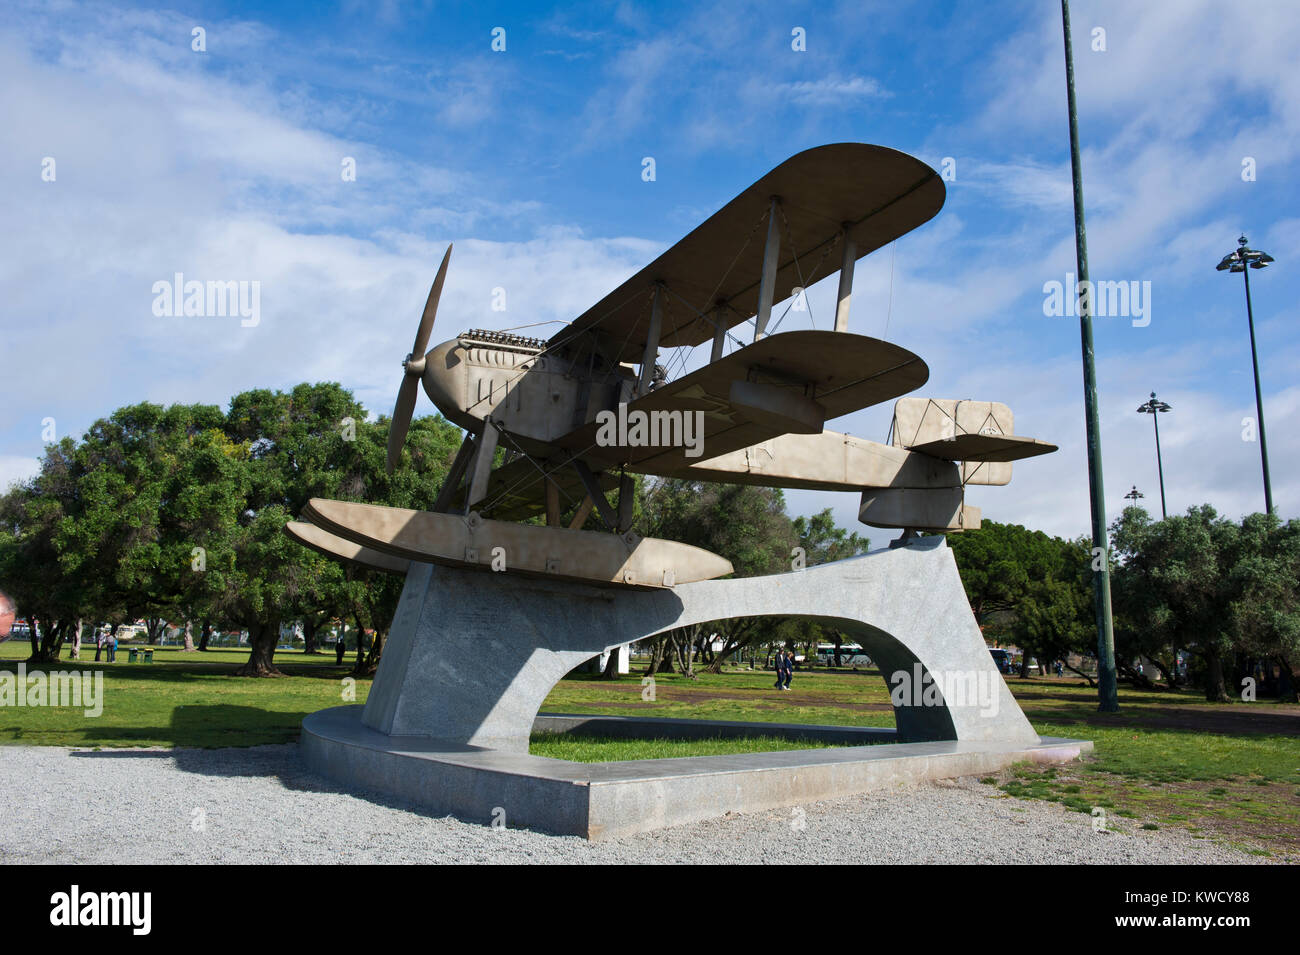 Monument d'avion. Monument du vol qui a célébré 100 ans d'histoire du Brésil à Belém, Portugal. Banque D'Images